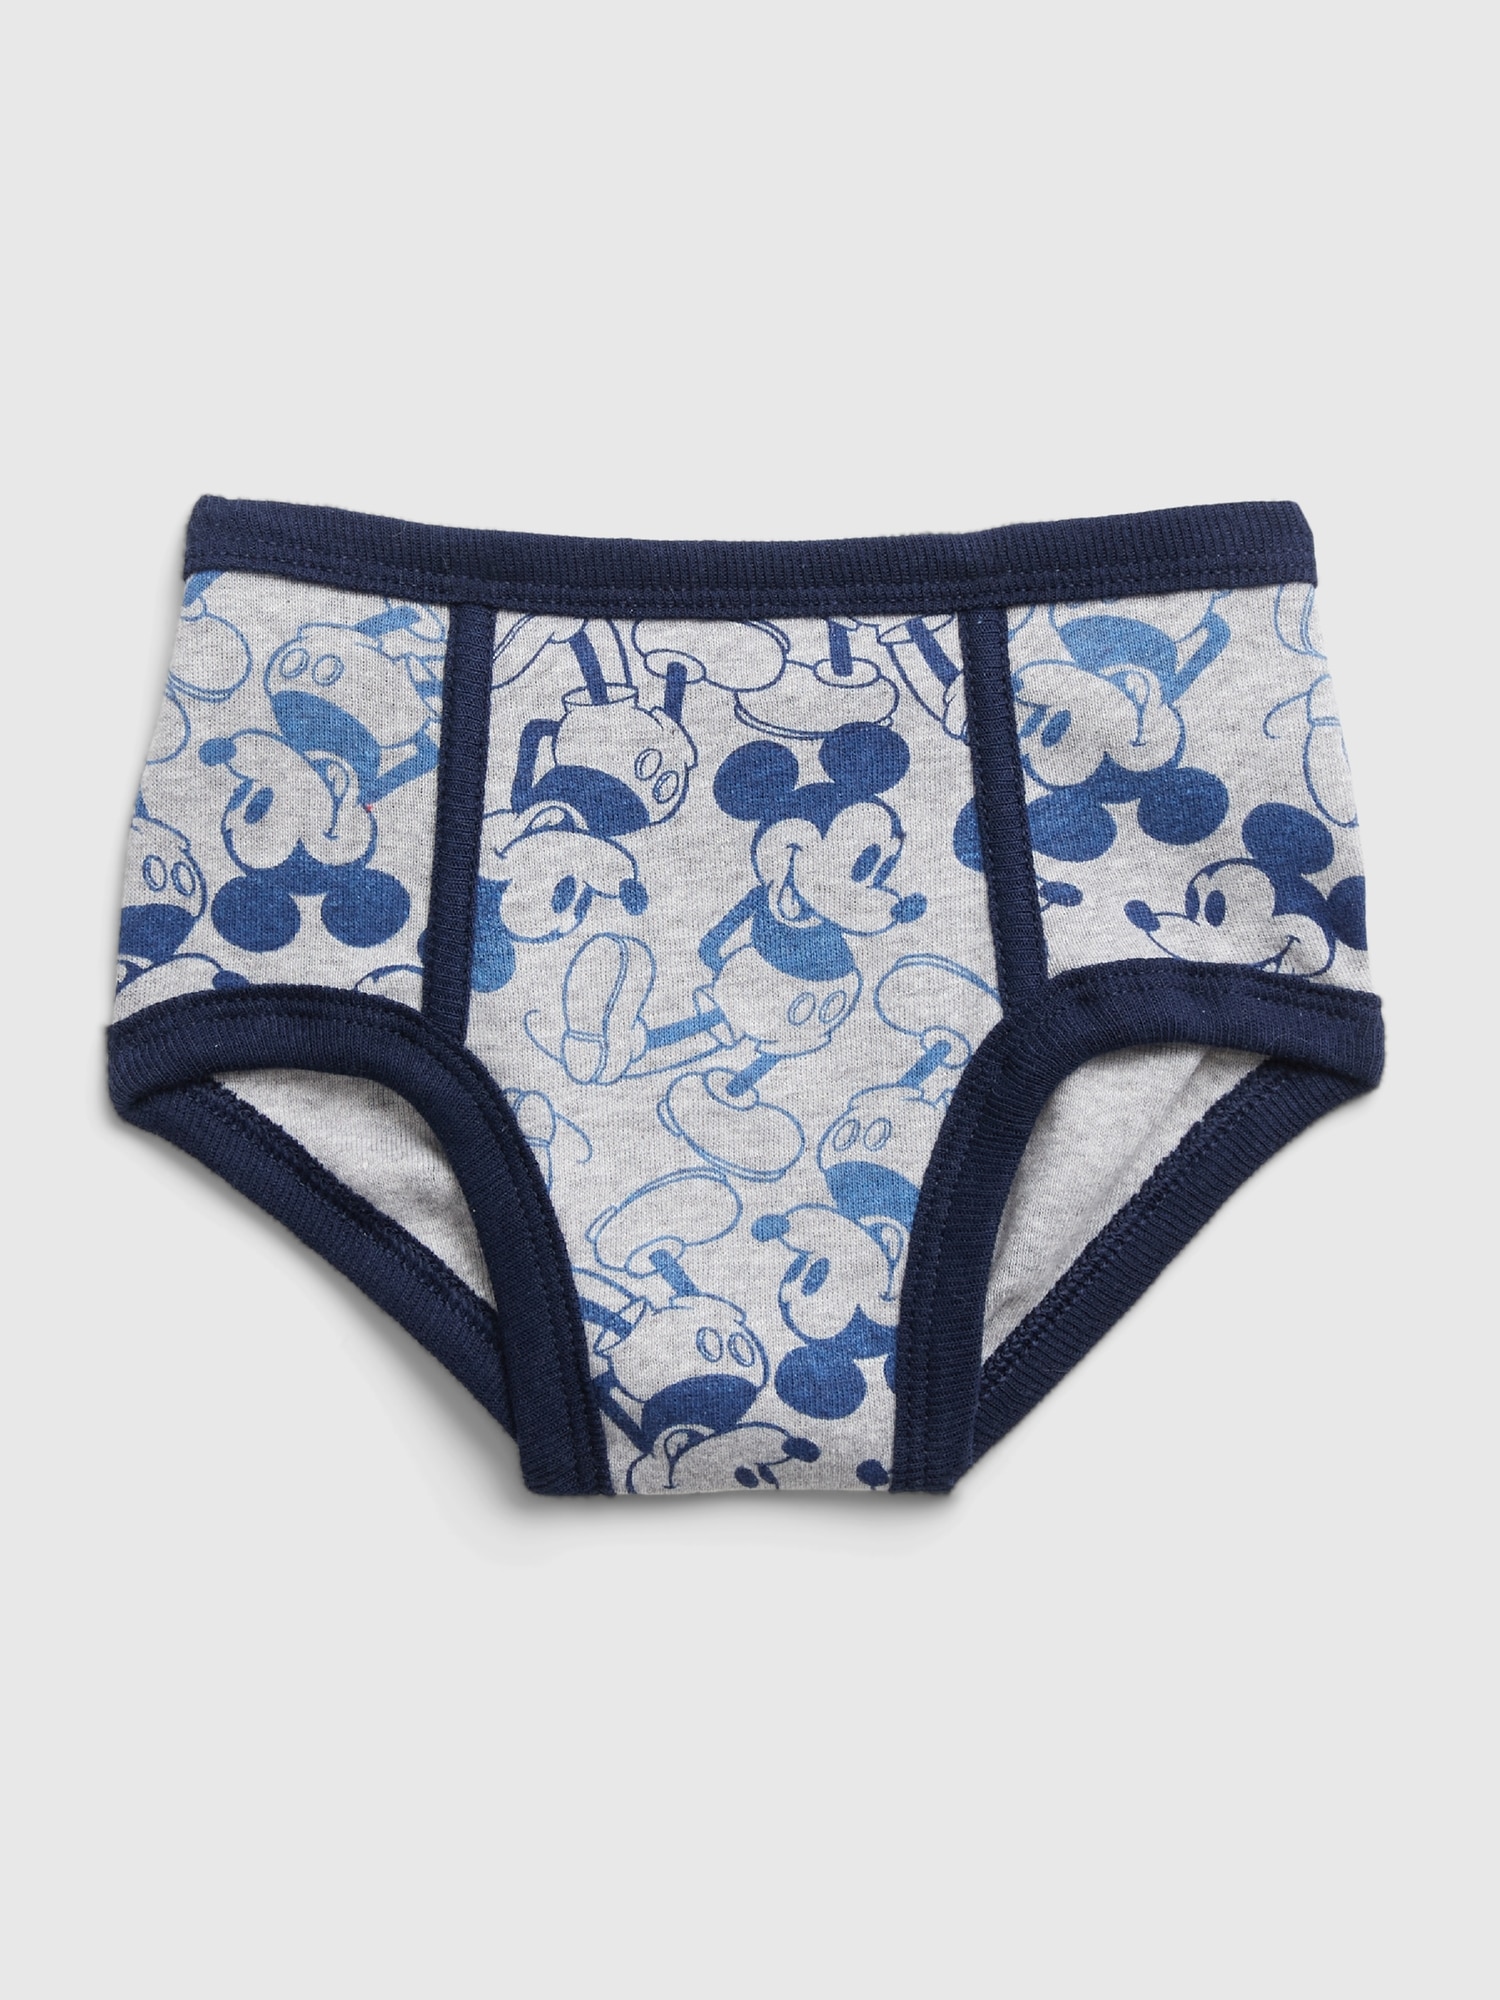 Disney Junior Mickey Mouse 3 Briefs Underwear 100% Cotton Size 2T